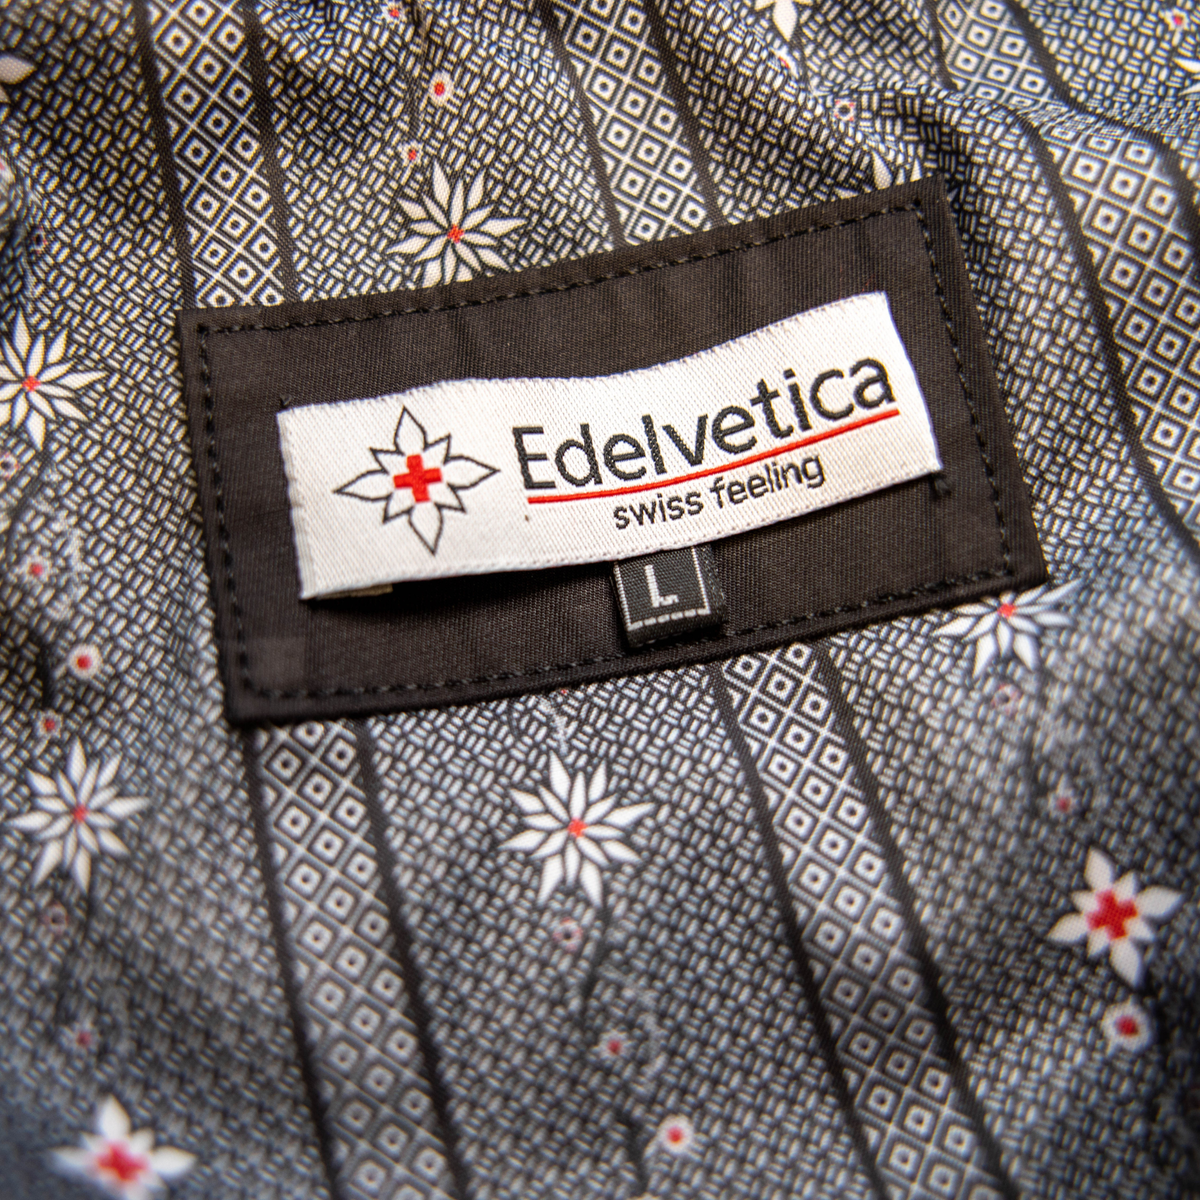 Herren Edelweiss Übergangsjacke von Edelvetica, eine elegante und funktionale Jacke. Sie zeichnet sich durch das charakteristische Edelweiss-Design aus, das stilvolle Akzente setzt. Ideal für die Übergangszeit, vereint die Jacke Komfort mit modischem Ausdruck und eignet sich perfekt für vielseitige Outfits.